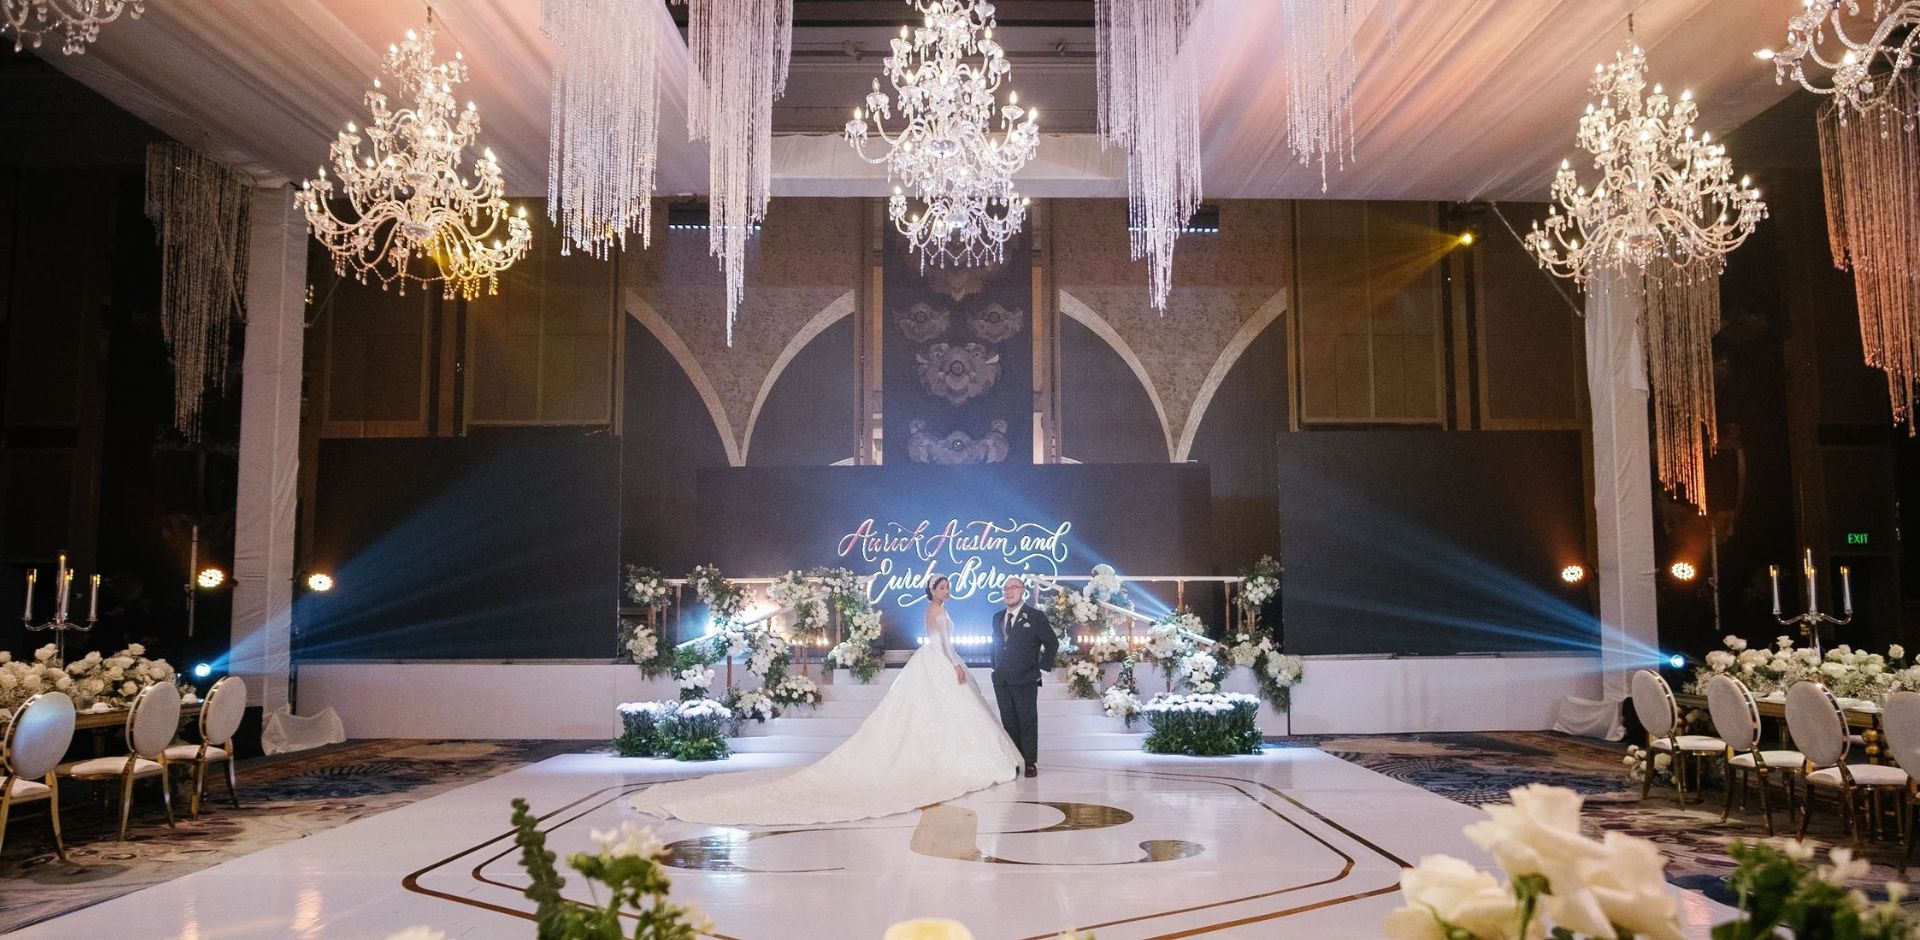 Wedding in Manila: Venue & Room